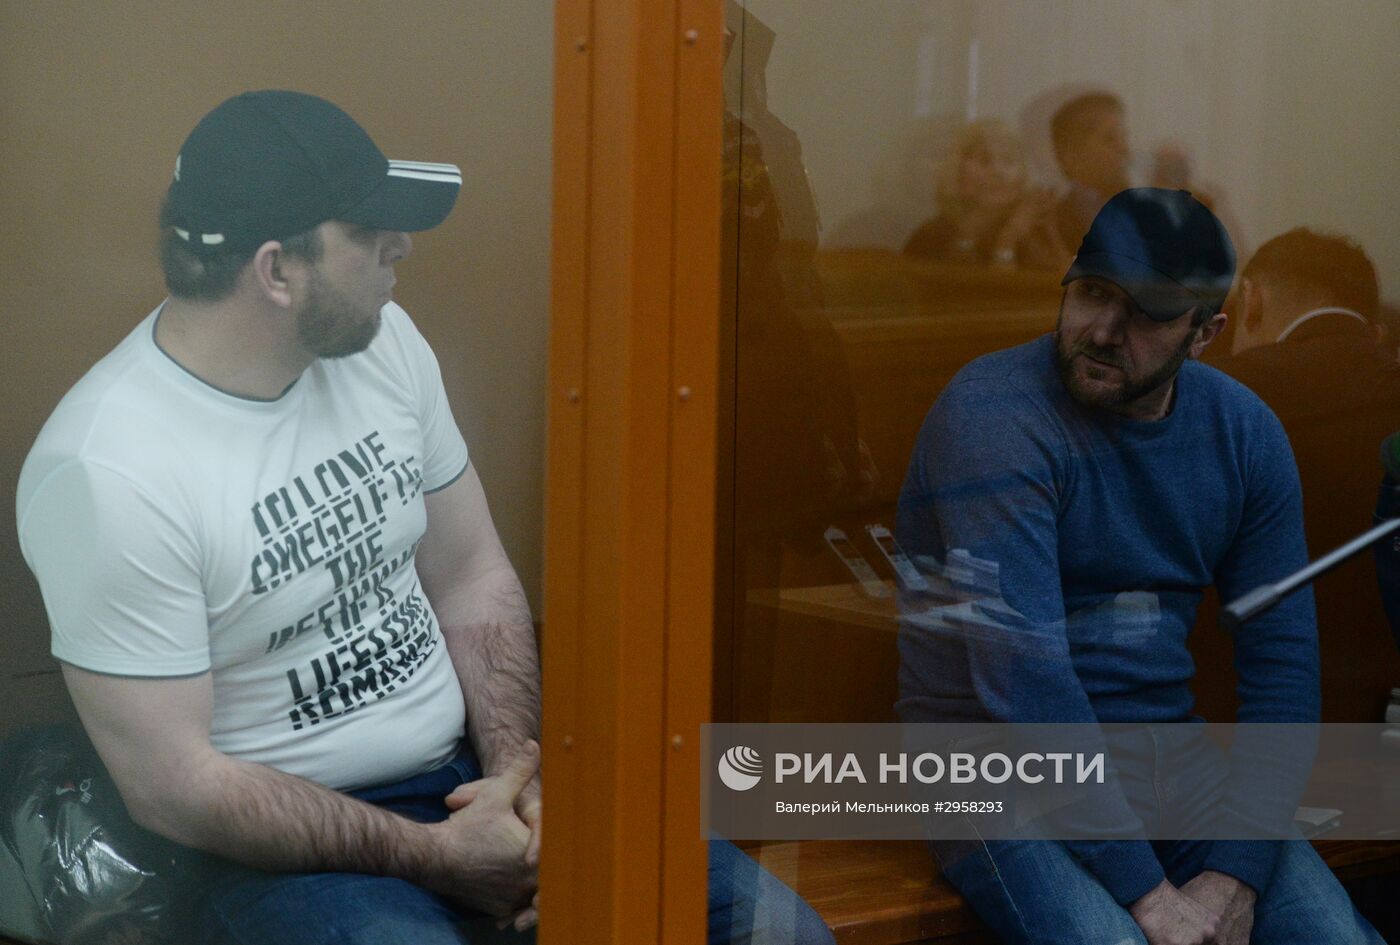 Рассмотрение уголовного дела об убийстве политика Б. Немцова